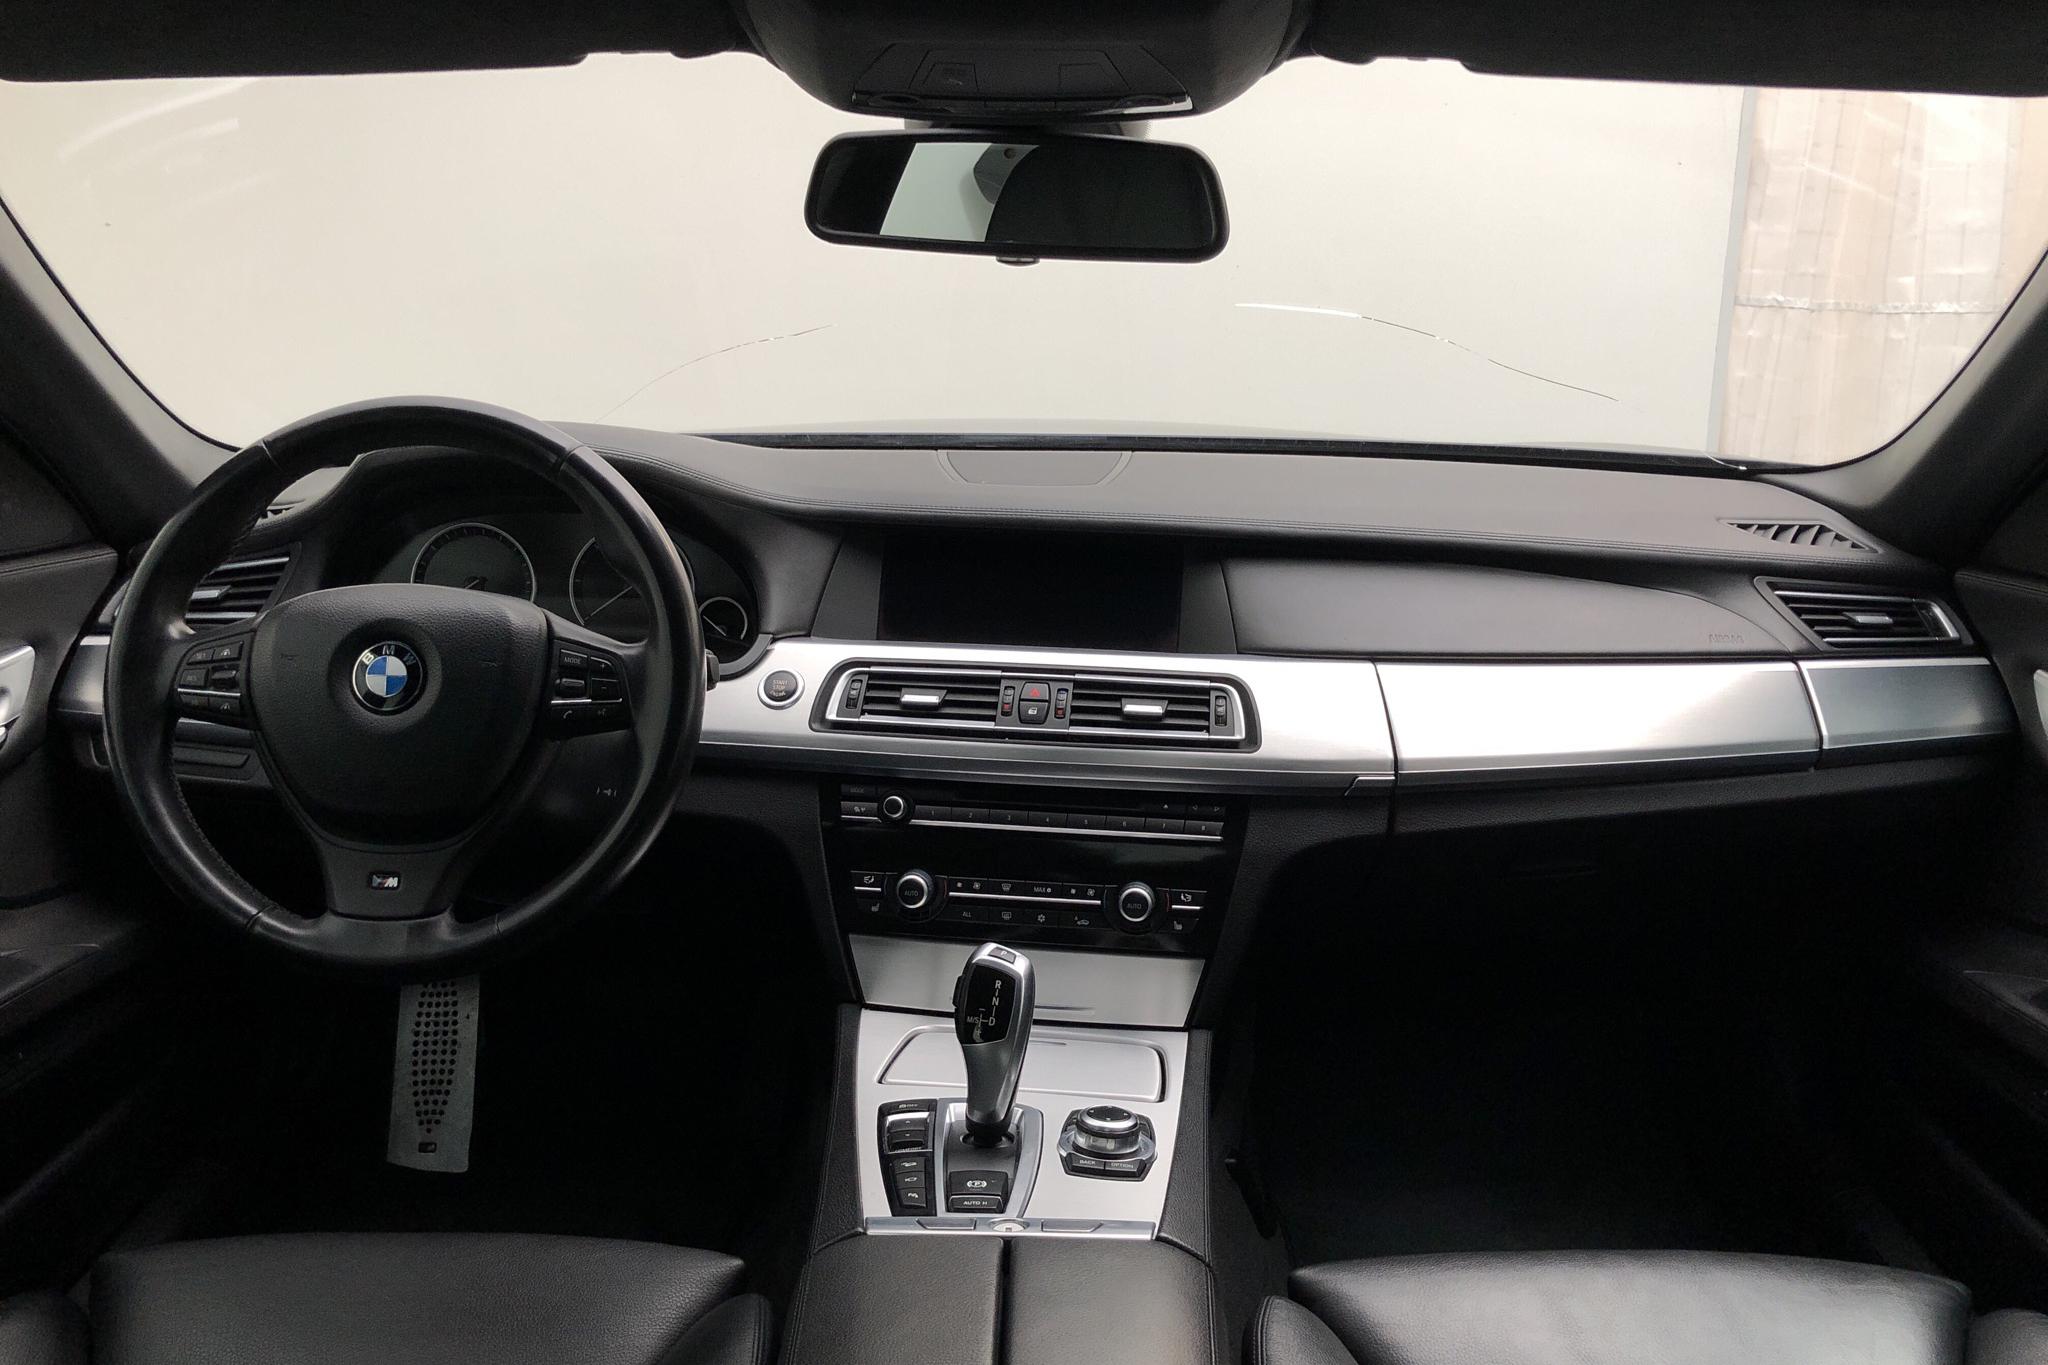 BMW 740d xDrive Sedan, F01 (306hk) - 235 670 km - Automatic - black - 2012